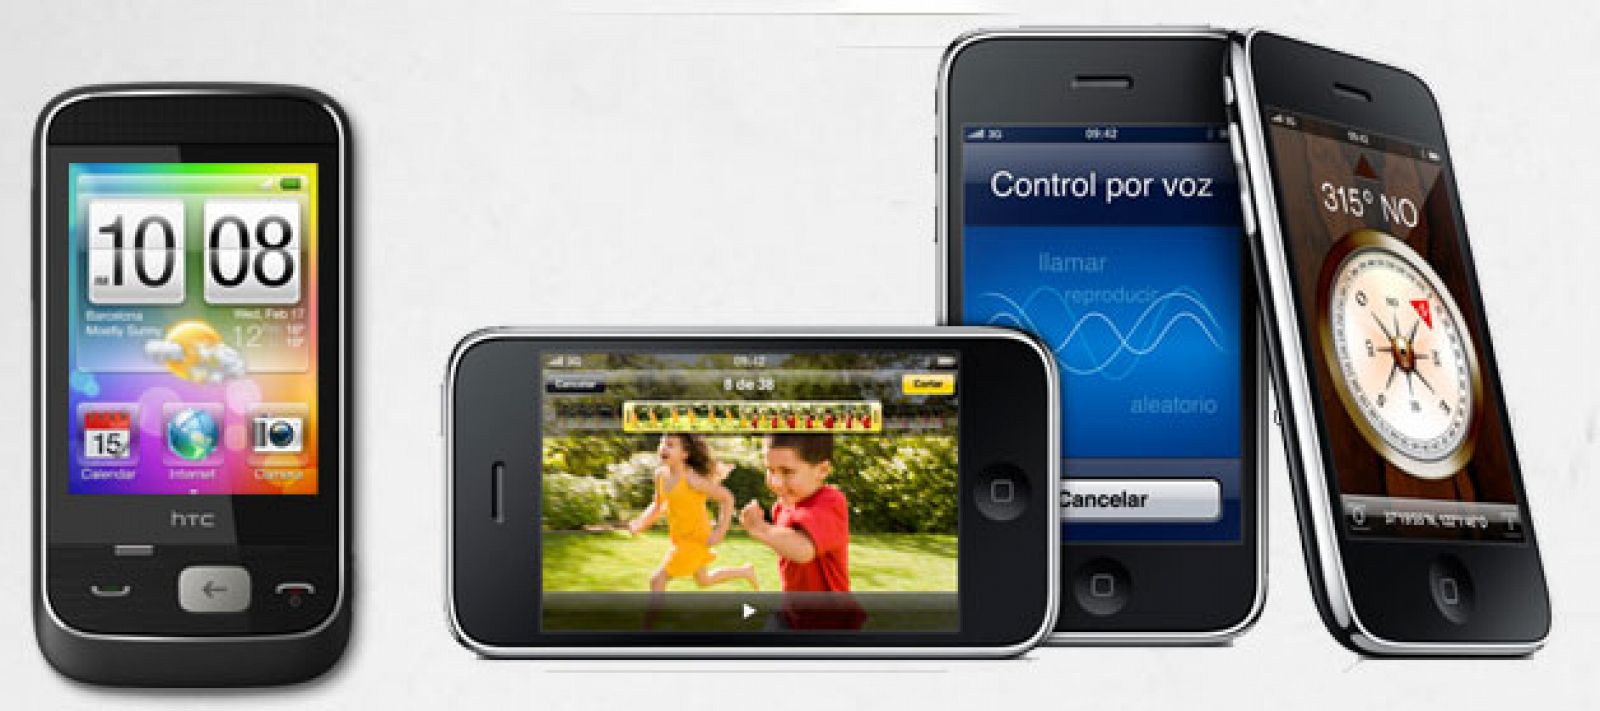 El móvil HTC con Android y el iPhone de Apple